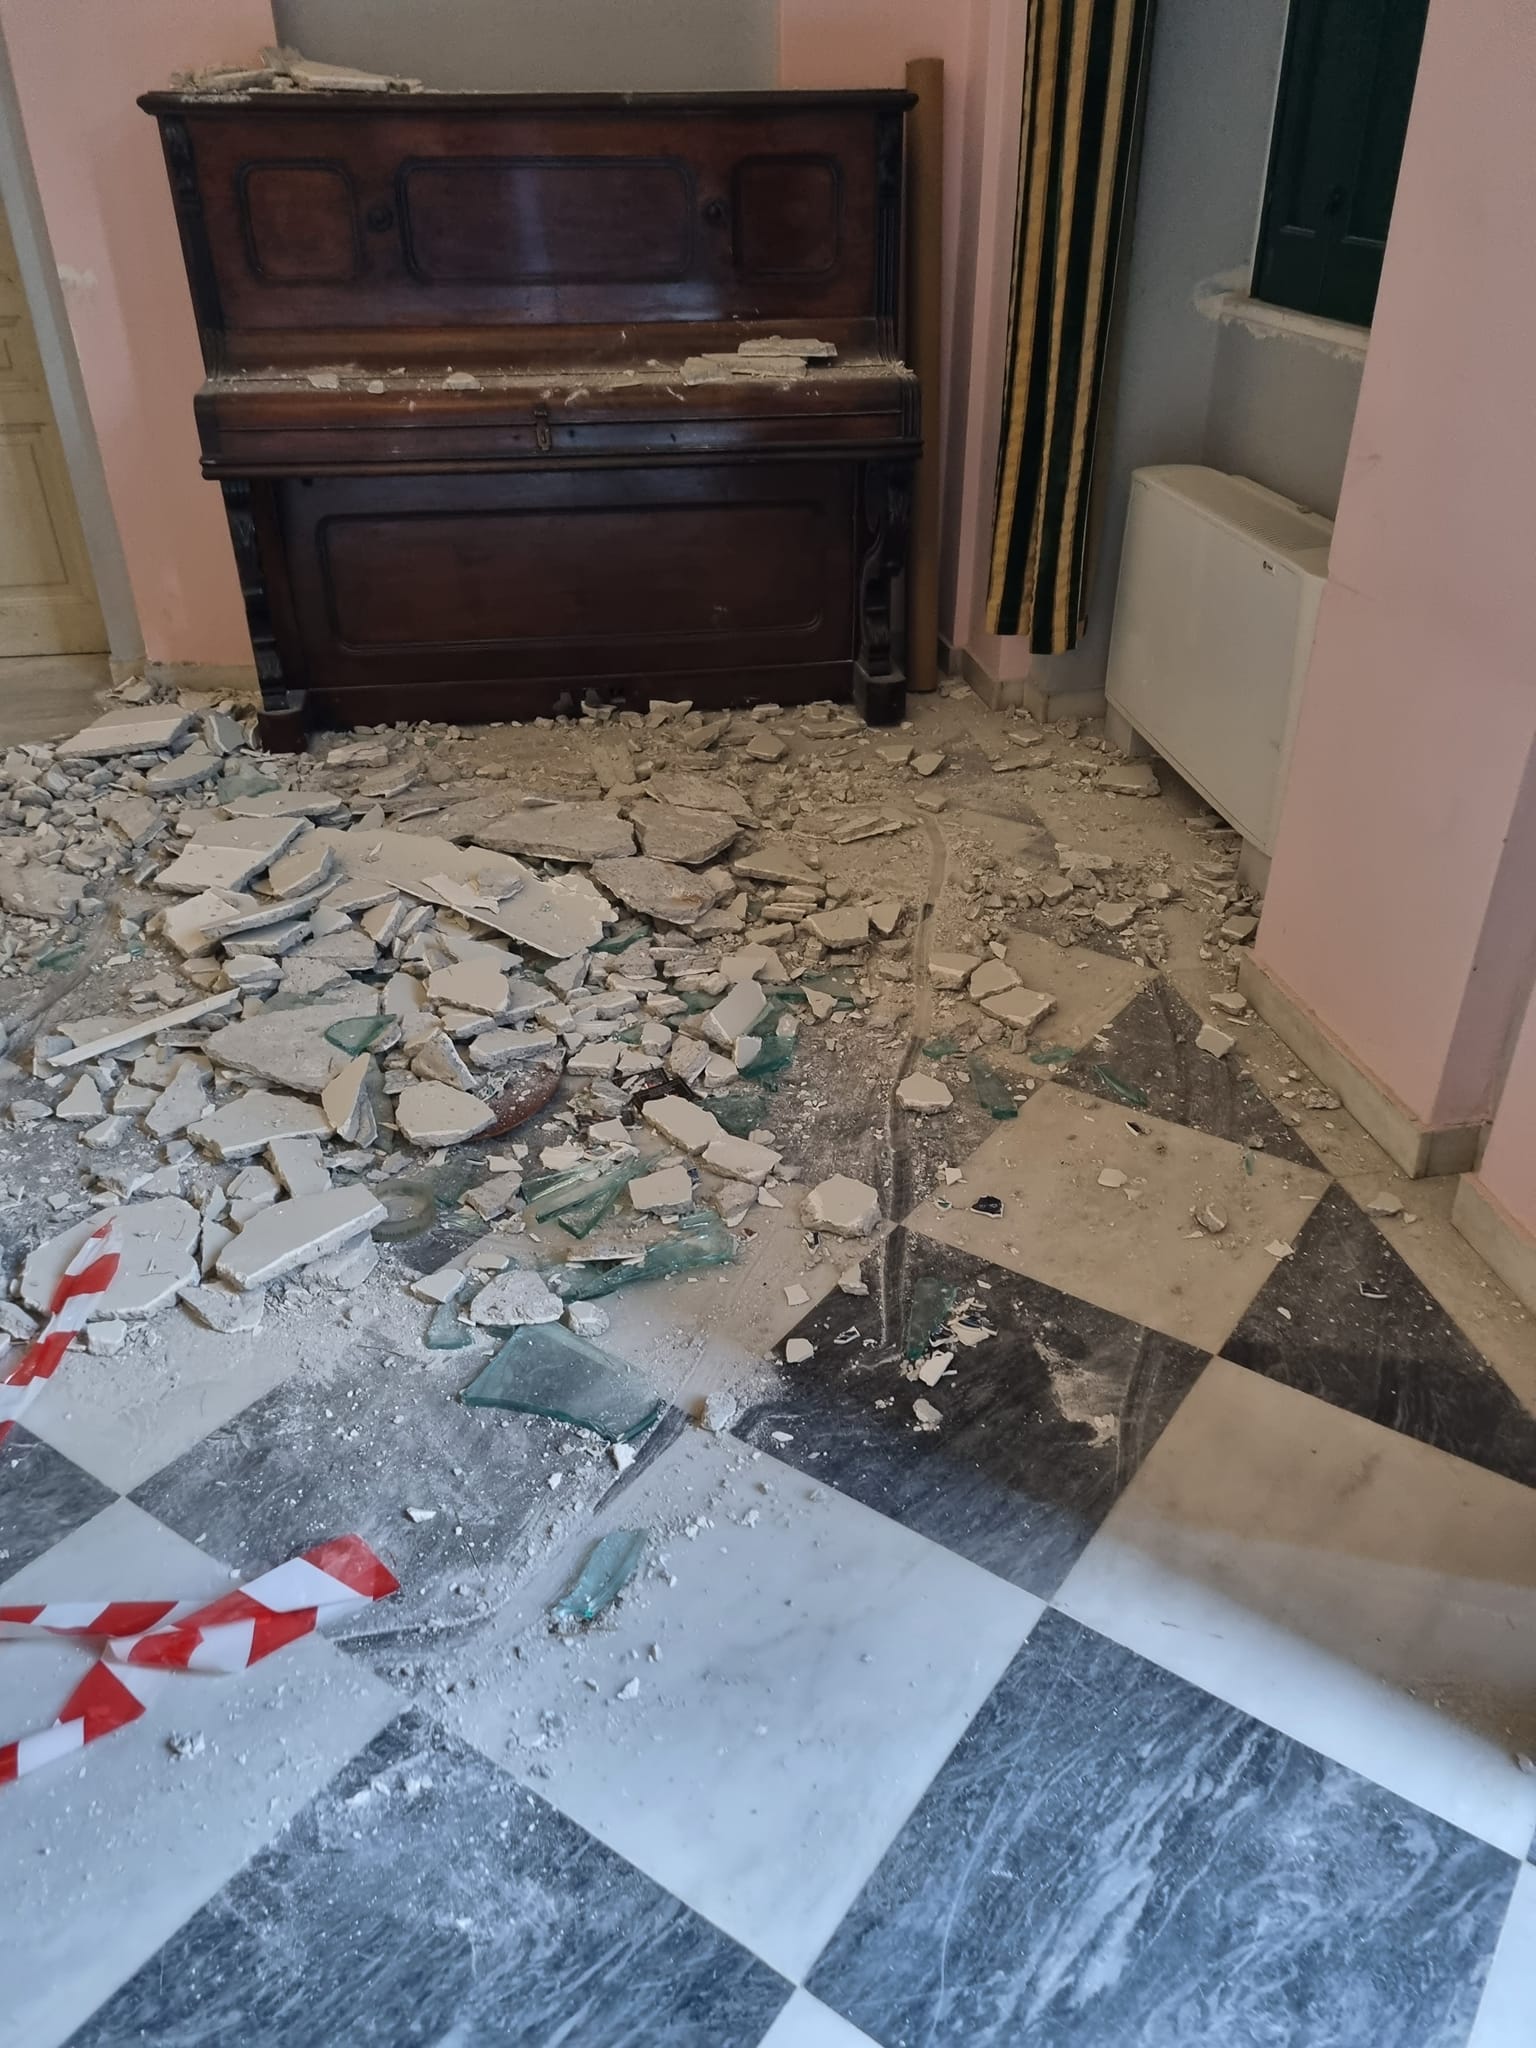 Σοβαρές ζημιές στο Δημαρχείο Ανατολικής Σάμου μετά τους σεισμούς- Δείτε εικόνες